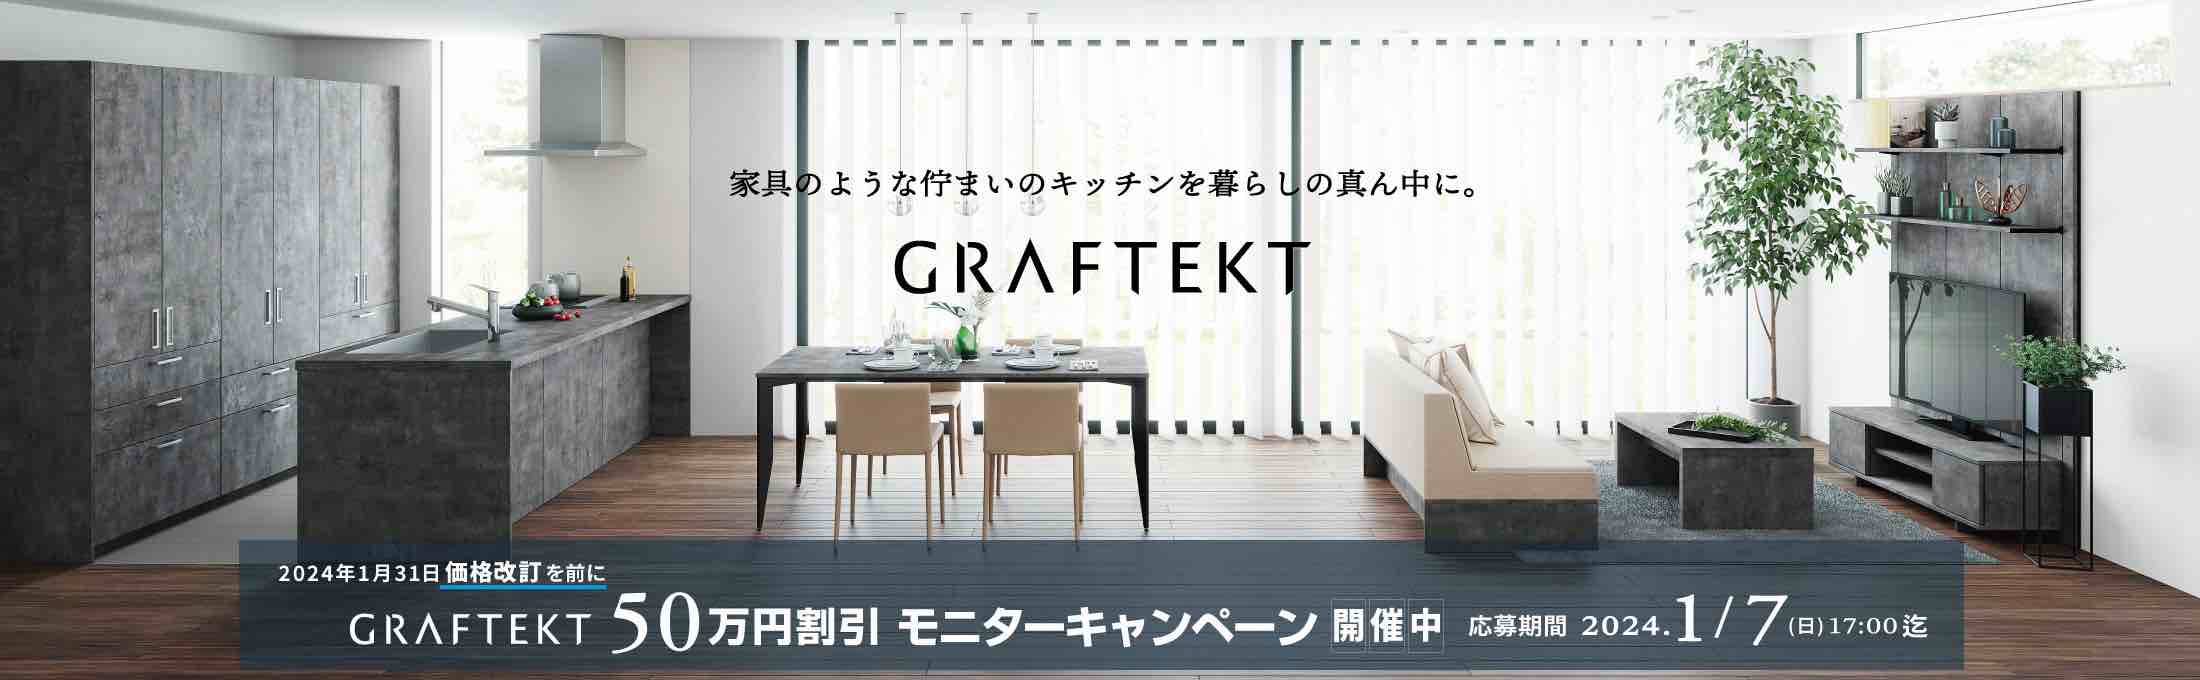 GRAFTEKT50万円割引モニターキャンペーン